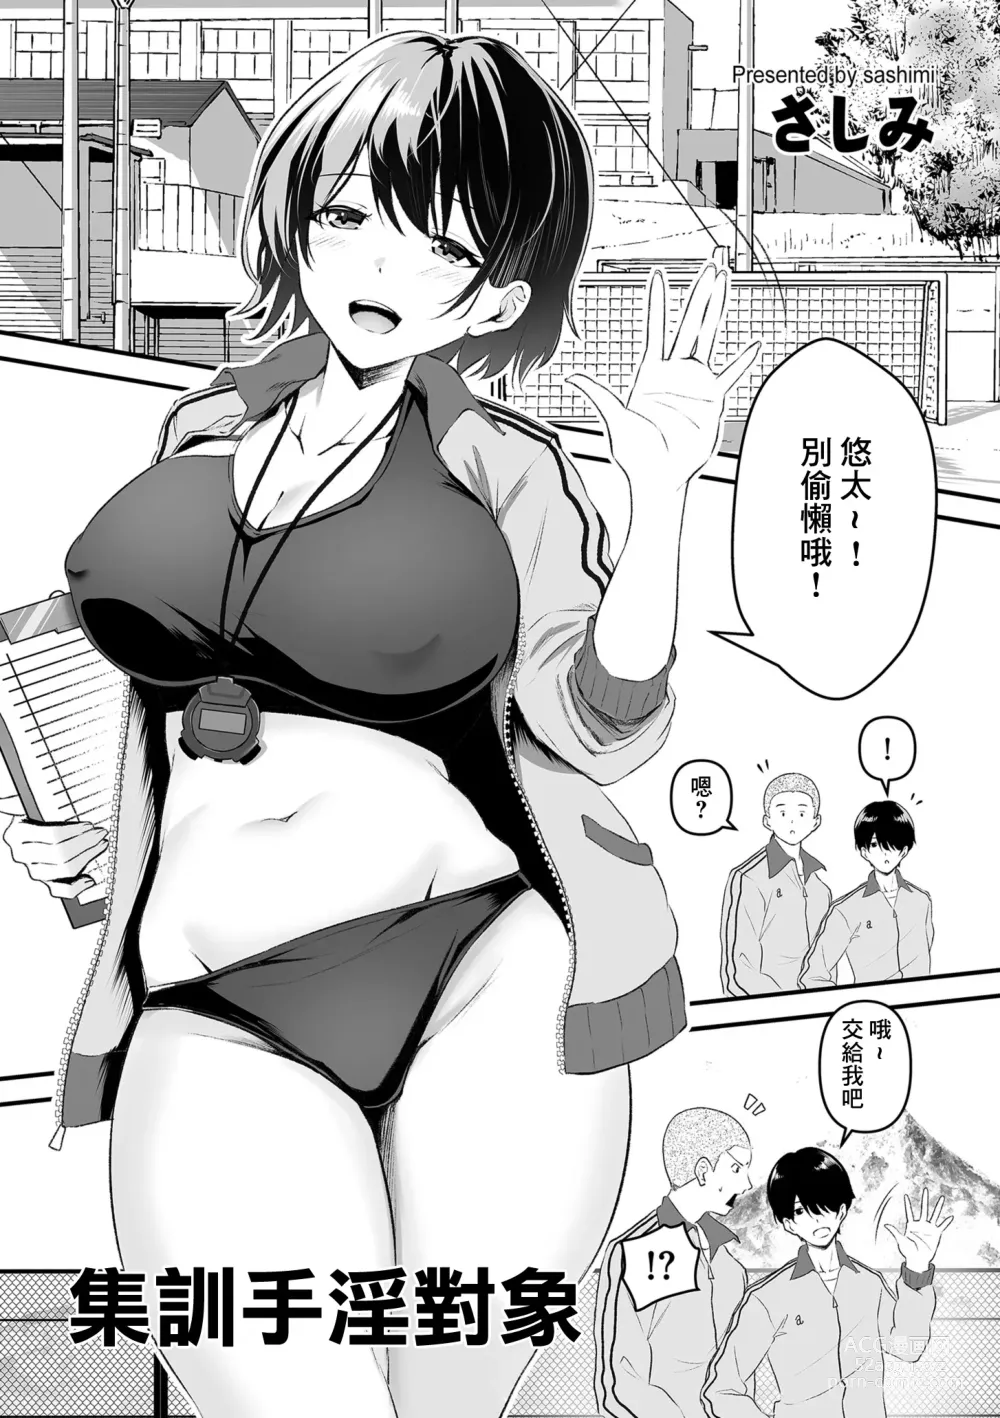 Page 1 of manga 集訓手淫對象